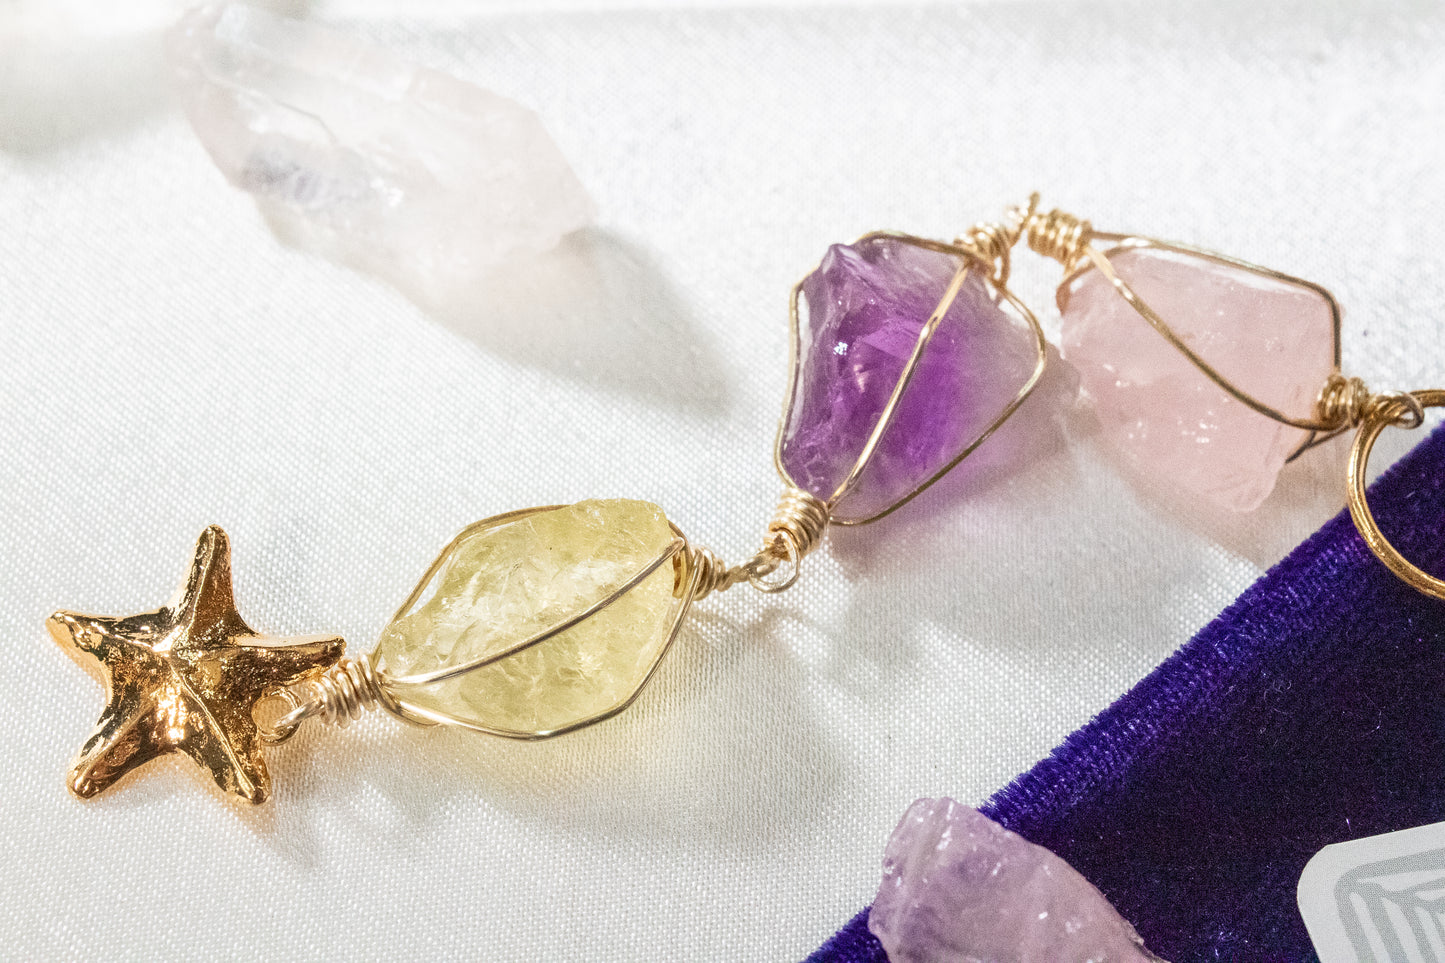 Ikal. Necklace with rose quartz, amethyst and lemon quartz.